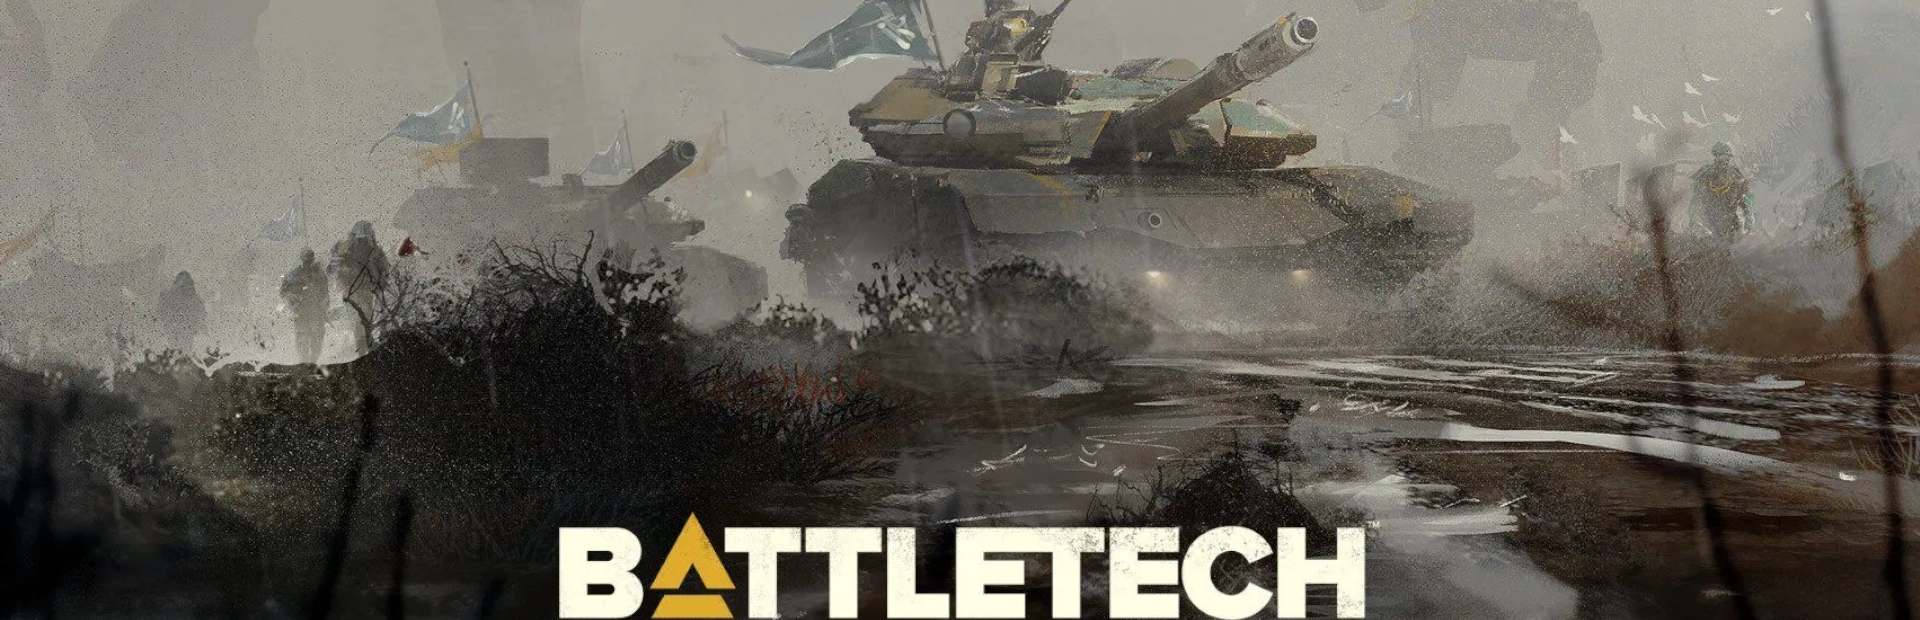 دانلود بازی Battletech برای کامپیوتر | گیمباتو